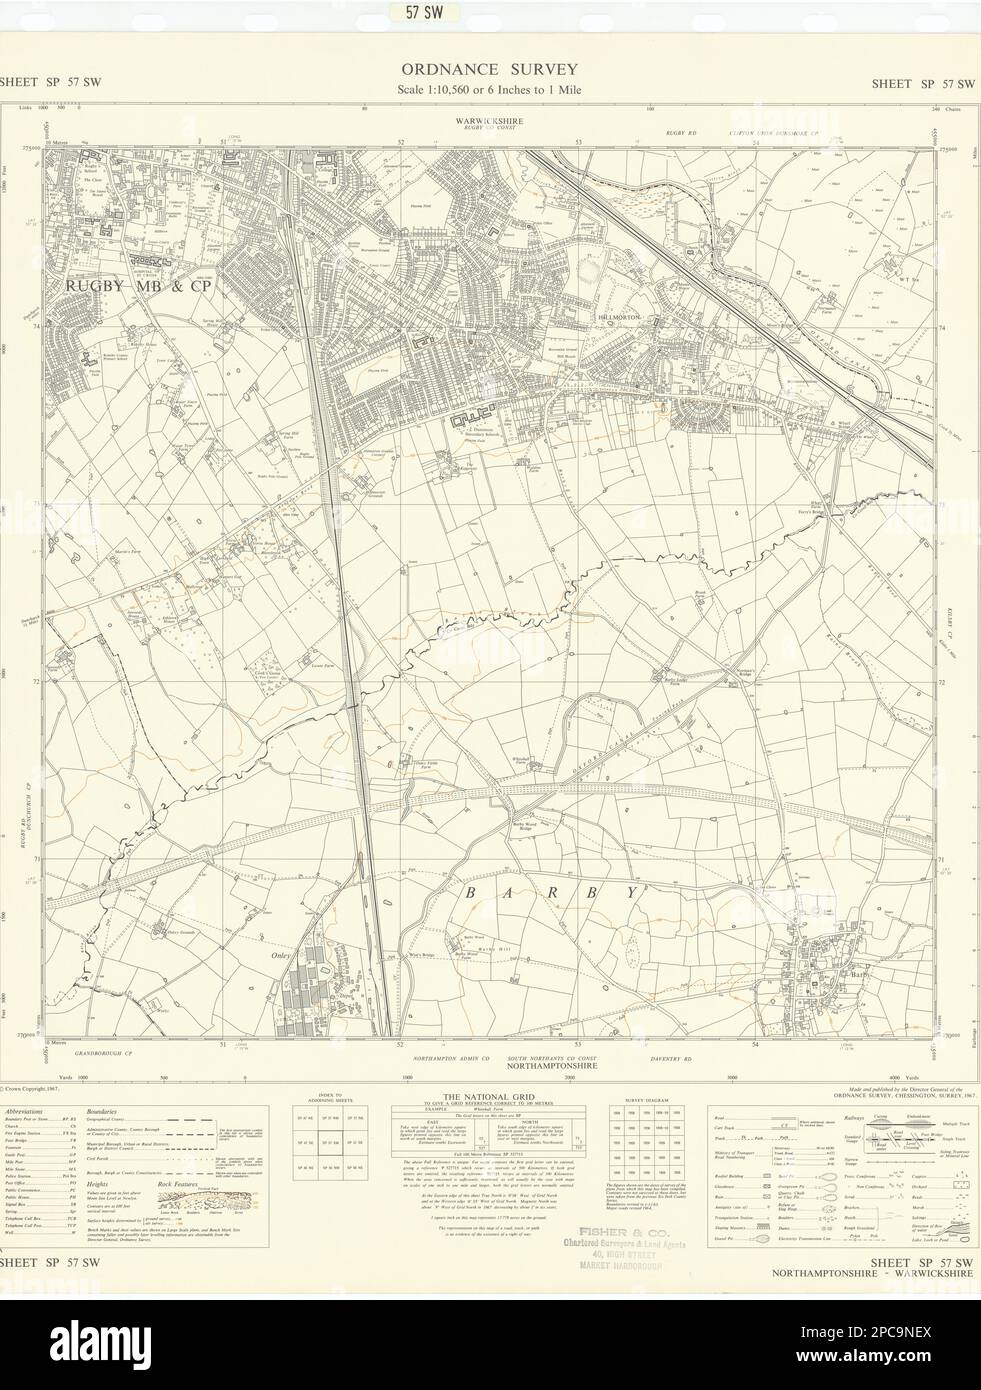 Hoja de encuesta de ordnance SP57SW Warwichshire Rugby Hillmorton Barby 1967 mapa antiguo Foto de stock